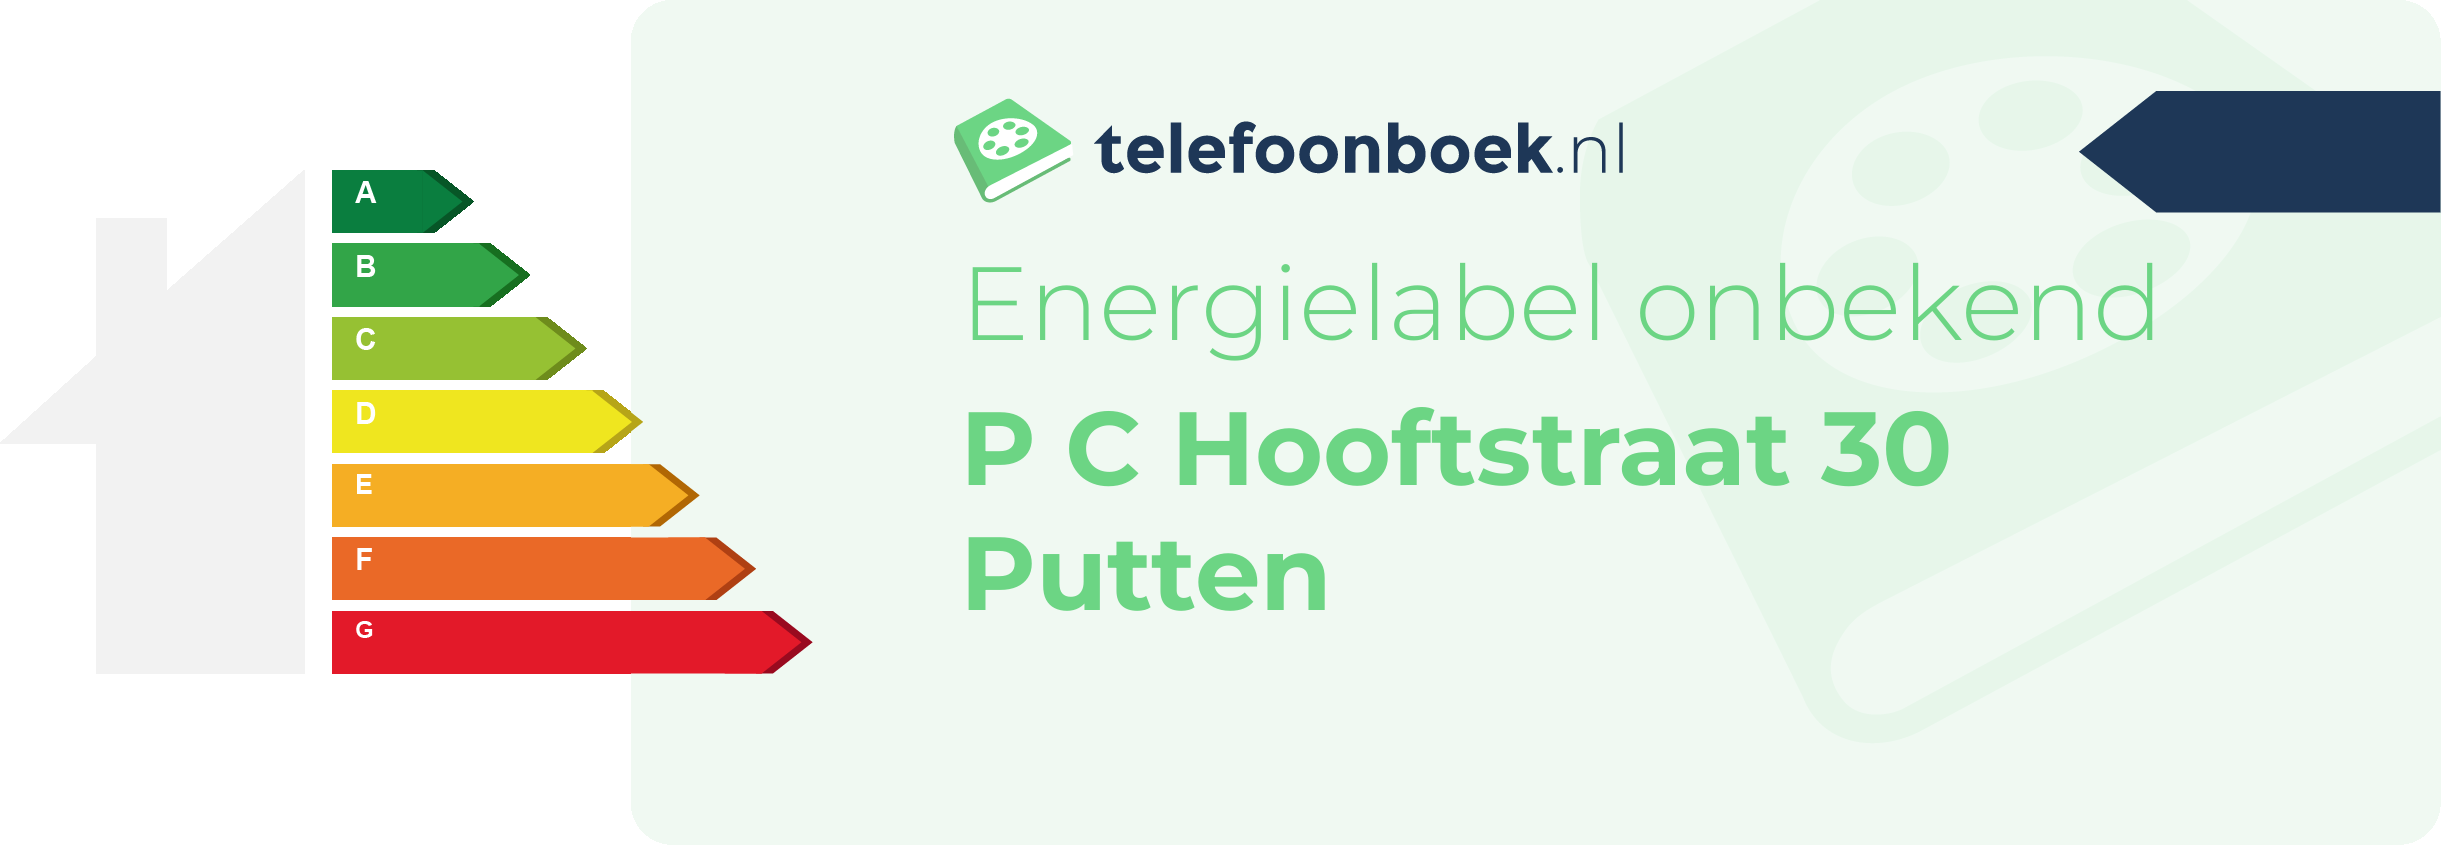 Energielabel P C Hooftstraat 30 Putten